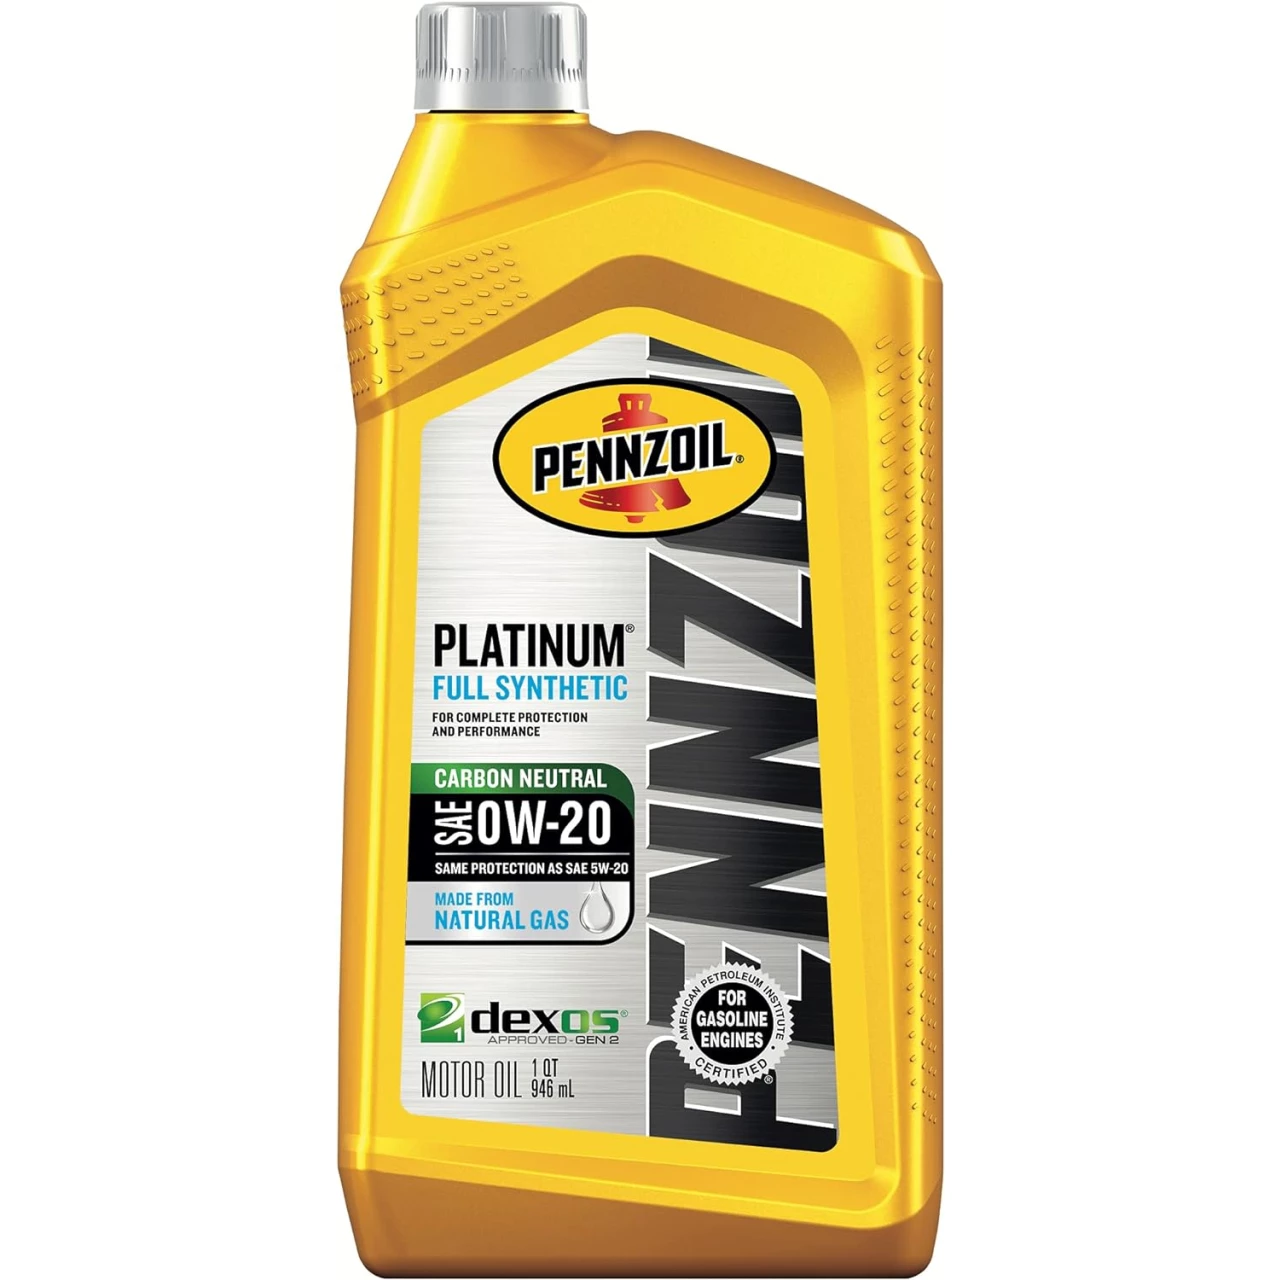 Pennzoil Platinum Full Synthetic 0W-20 Motor Oil (1-Quart, Case of 6)